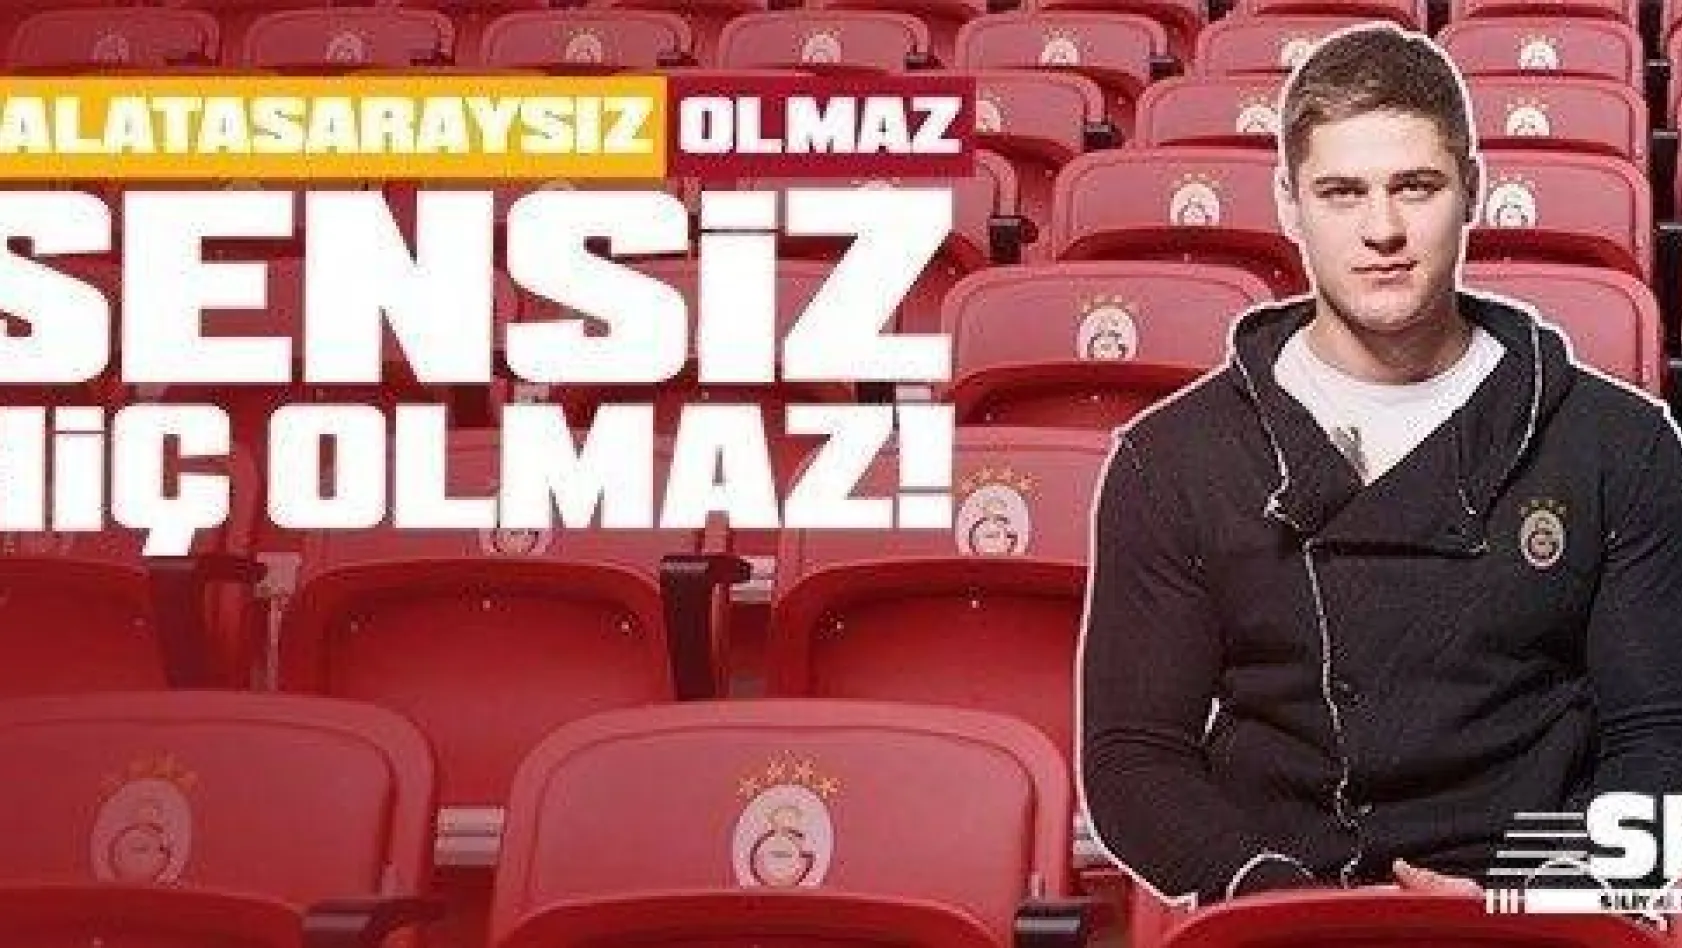 Galatasaray, taraftarların fotoğraflarını tribüne koyacak